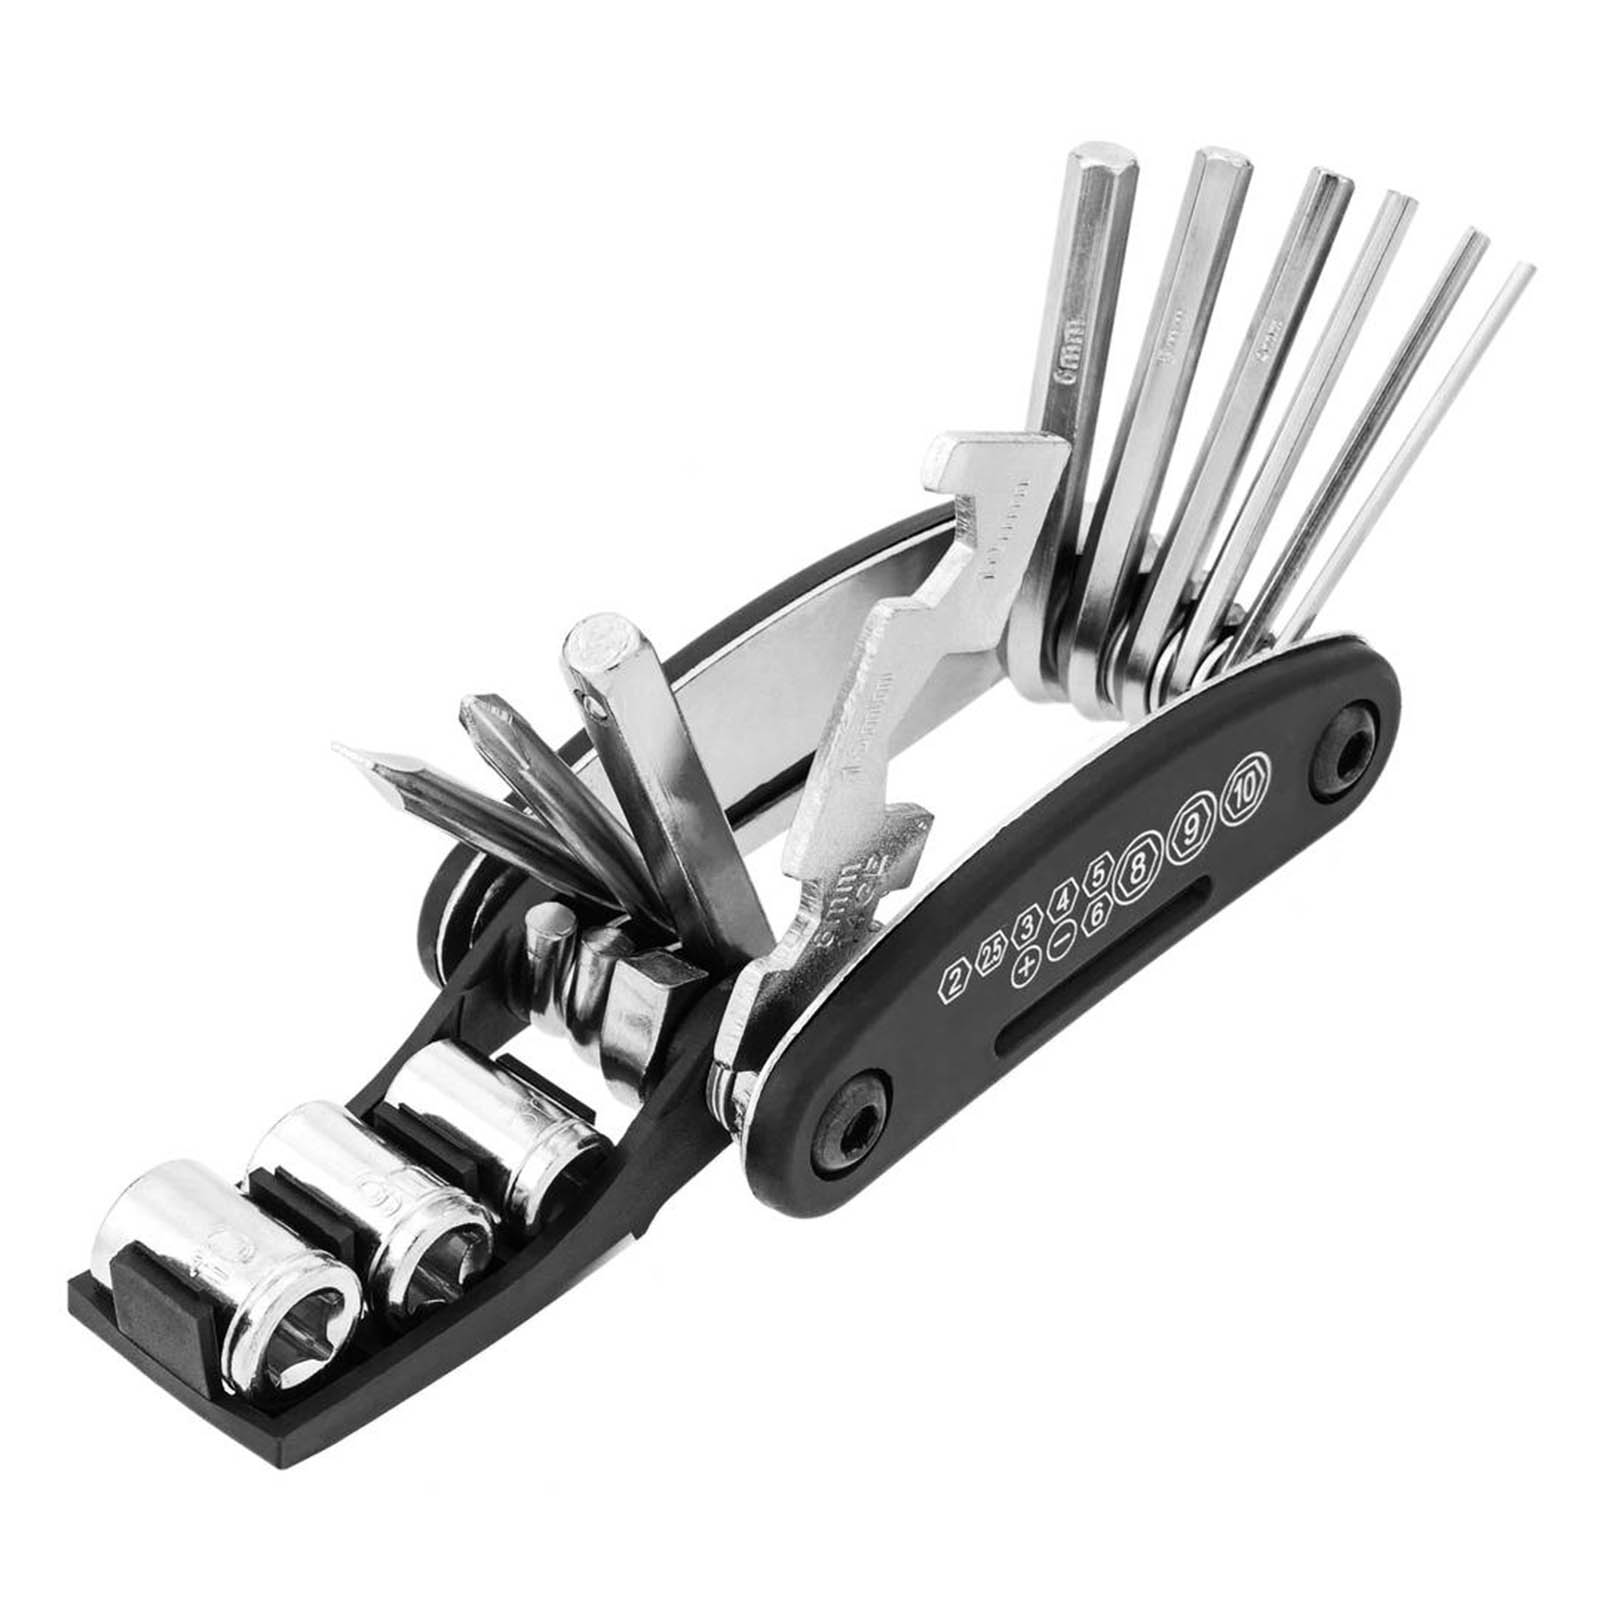 acheter 13in1 kit d'outils pro pour la réparation de l'iPhone